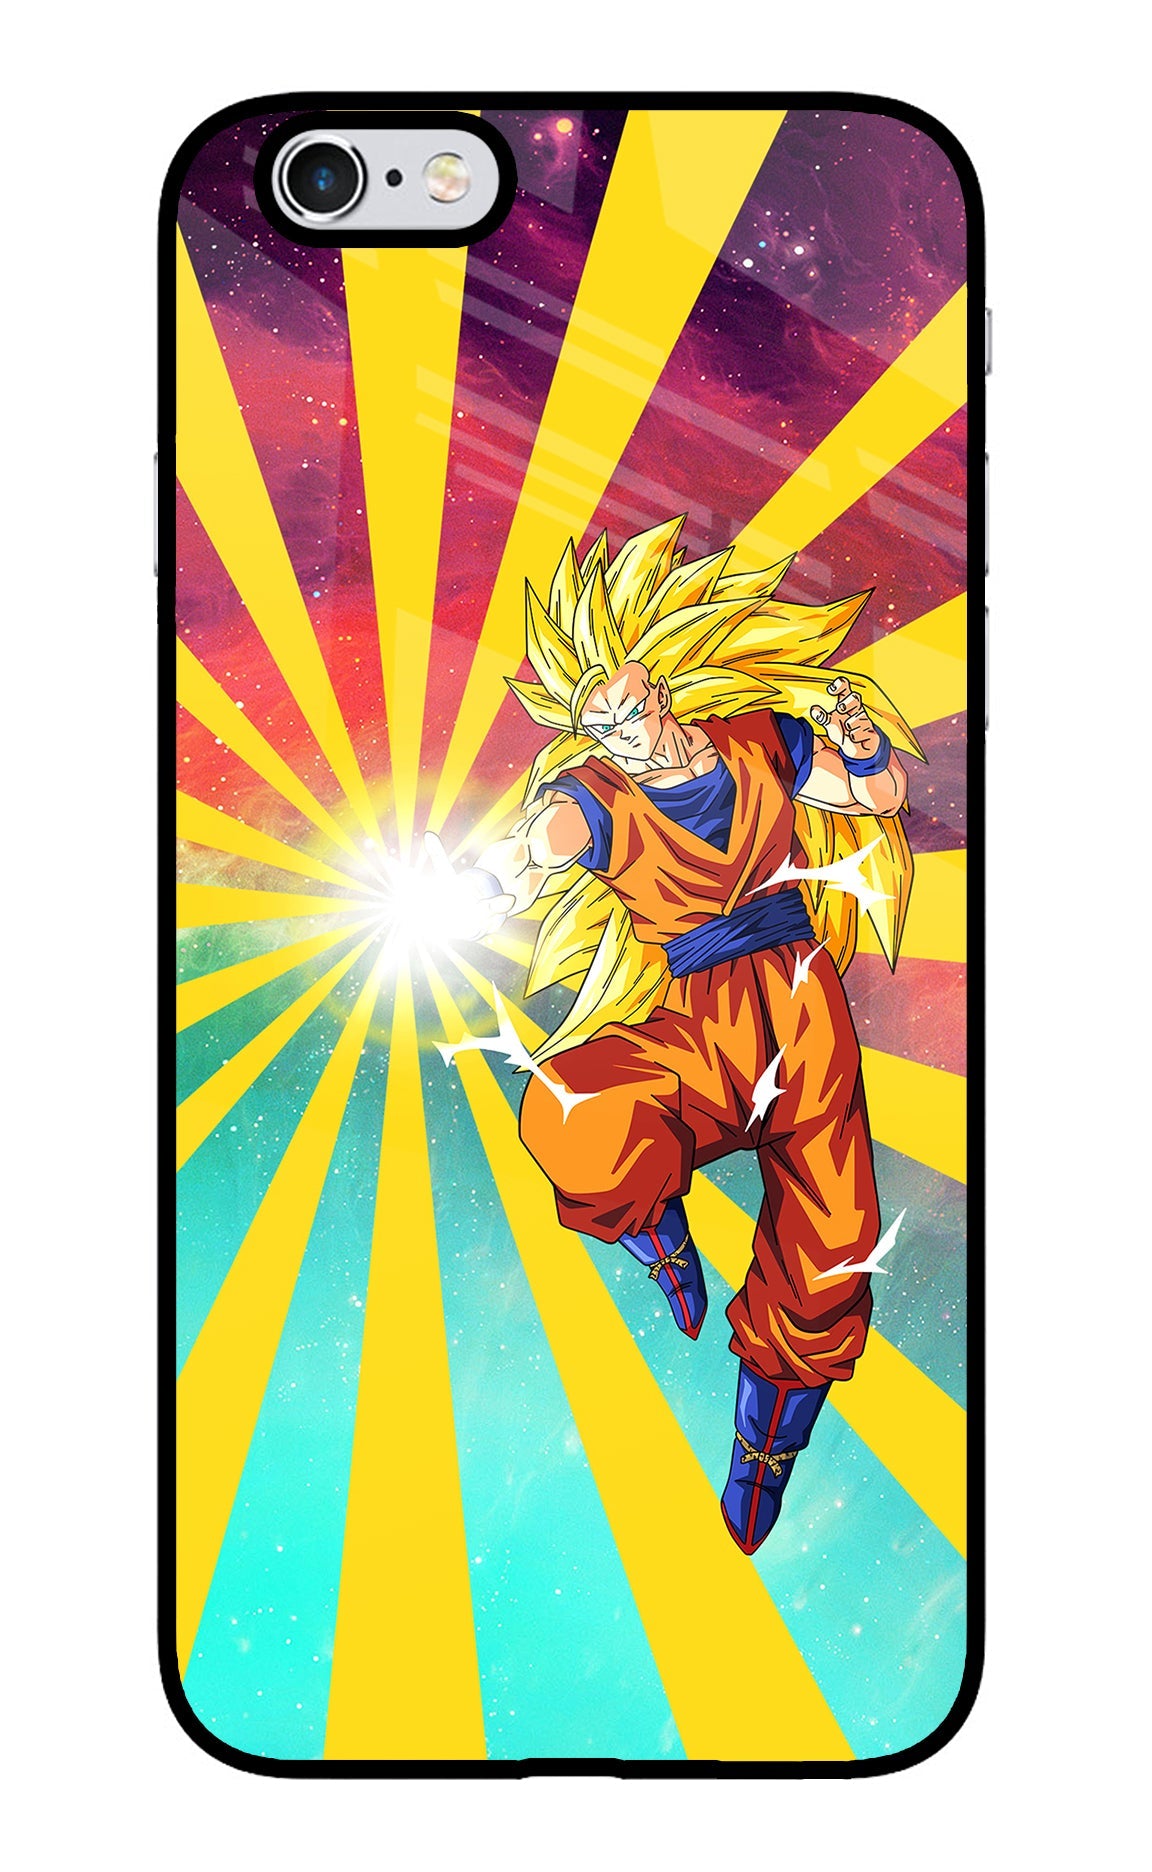 Goku Super Saiyan iPhone 6/6s Glass Case